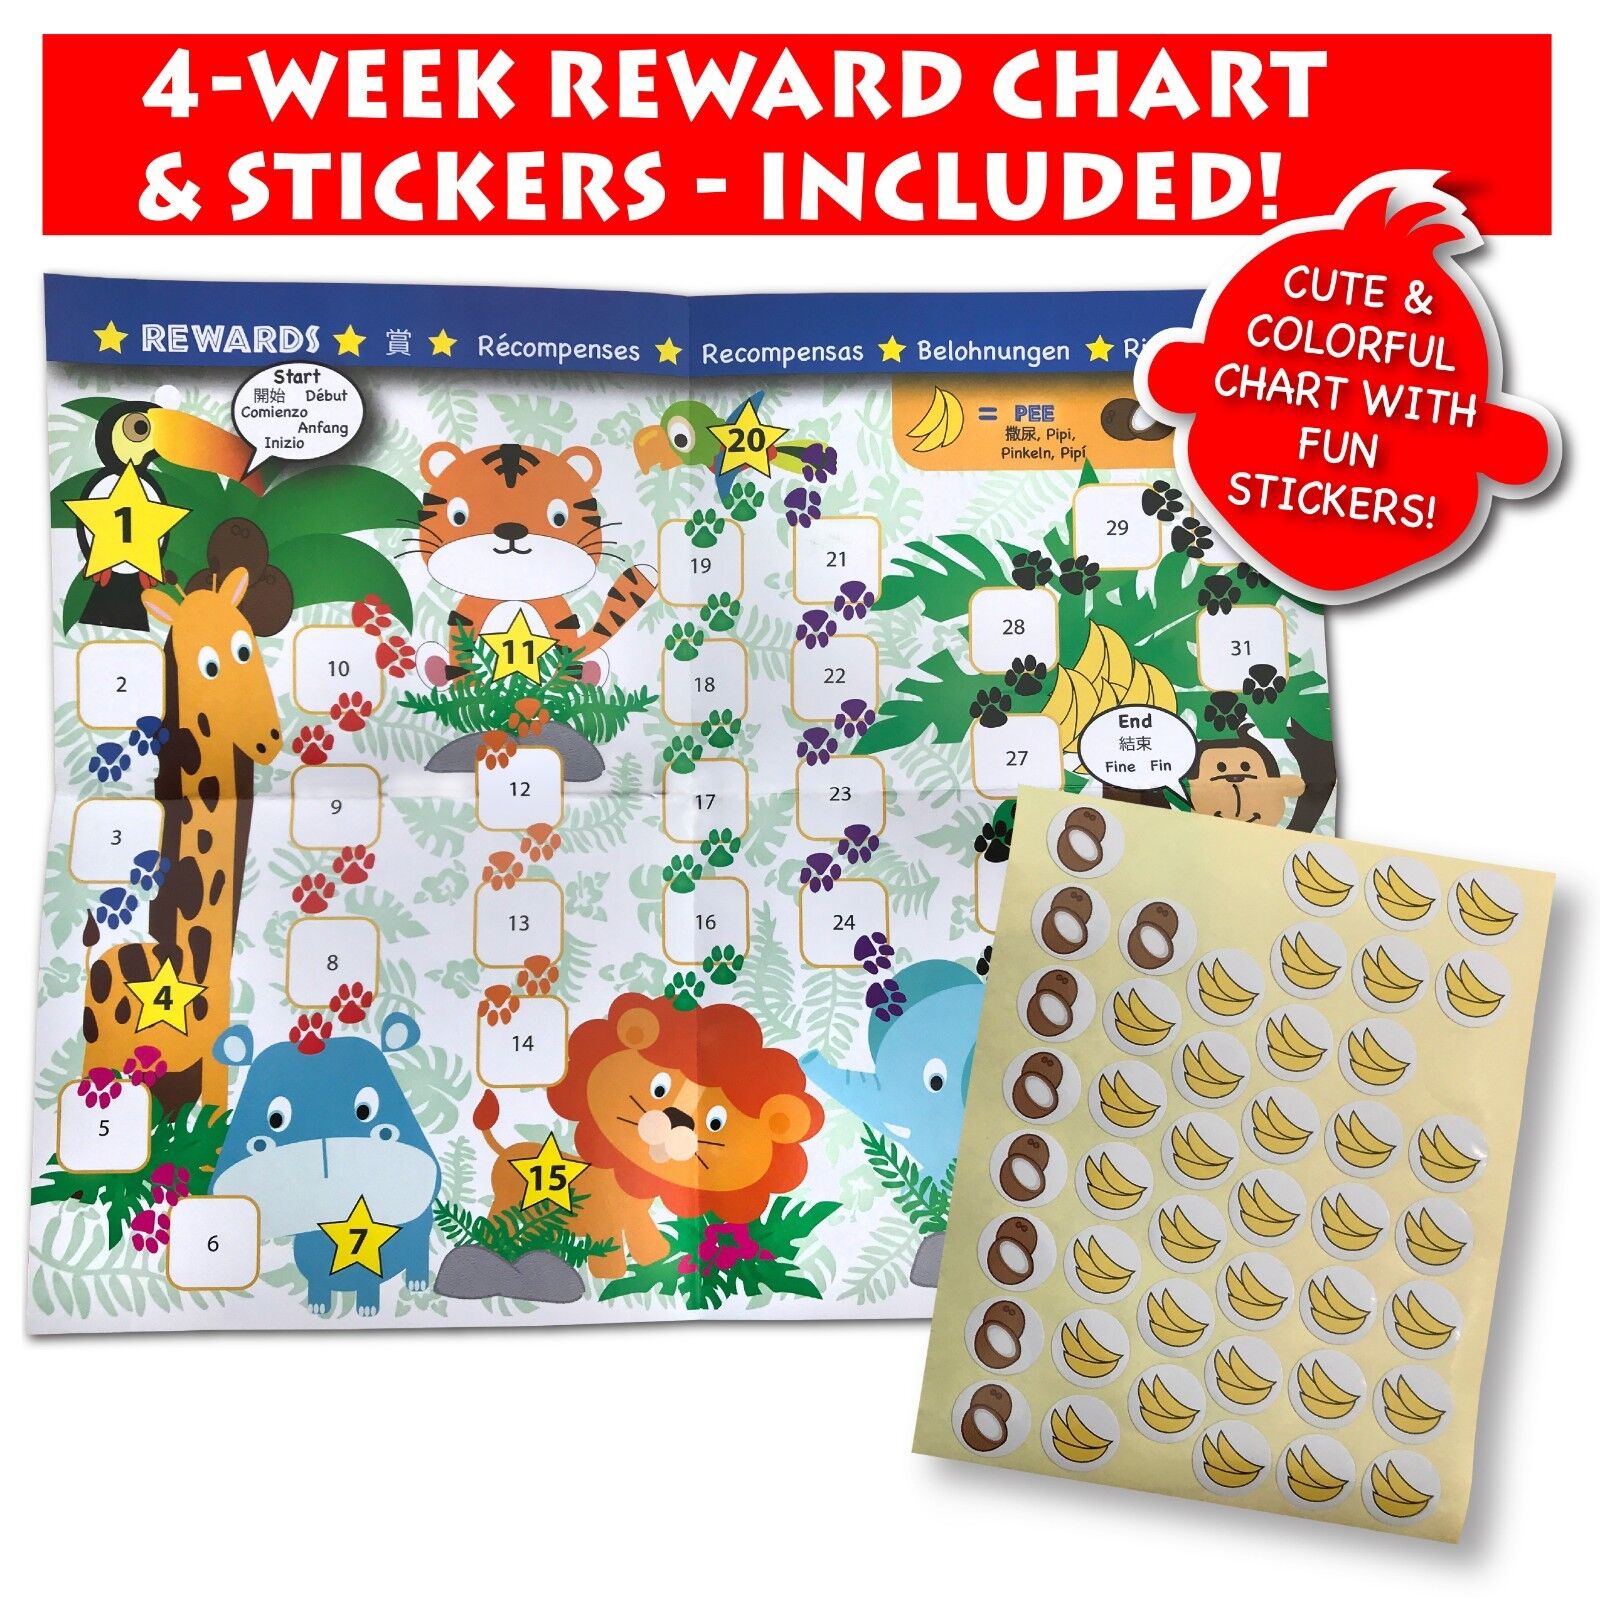 Potty Monkey Watch | Potty Training Reminder Watch w/ Colorful Fun Reward Chart Potty Monkey PMW - фотография #4